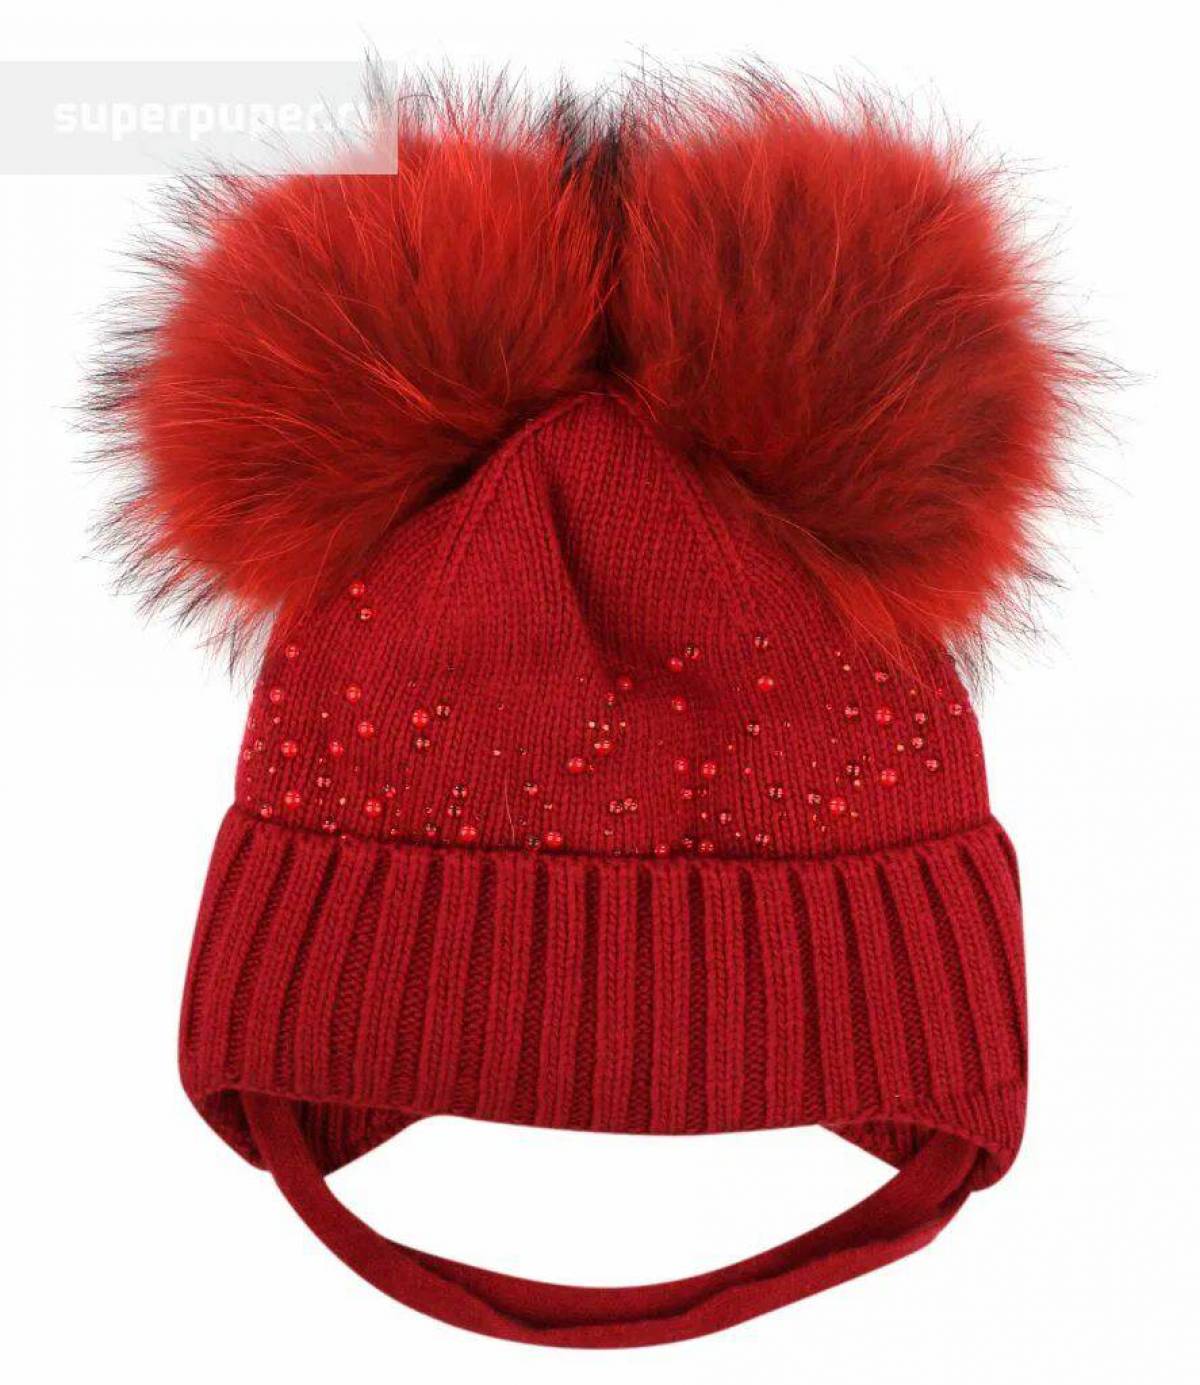 Картинка шапка. Шапка для детей. Зимняя шапка. Красная зимняя шапка для девочки. Одежды для детей шапки.